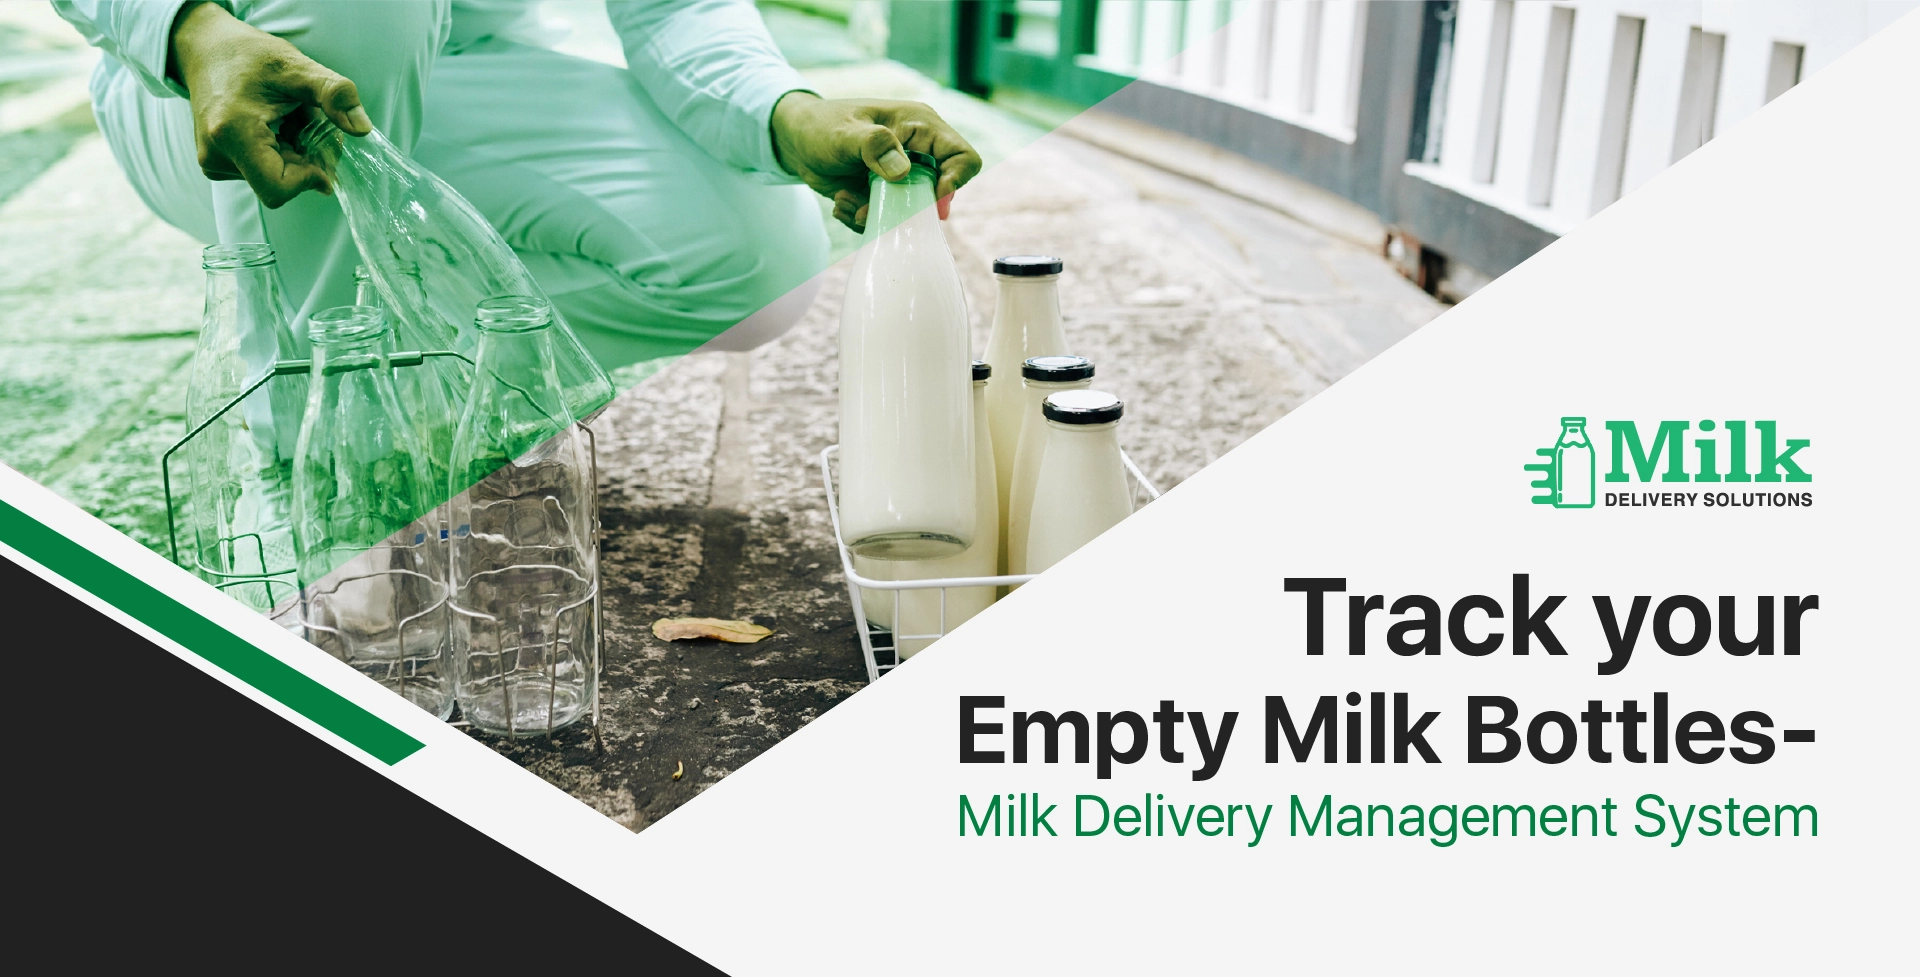 ravi garg, mds, empty milk bottles tracking, milk delivery management system, milk delivery software, system, 